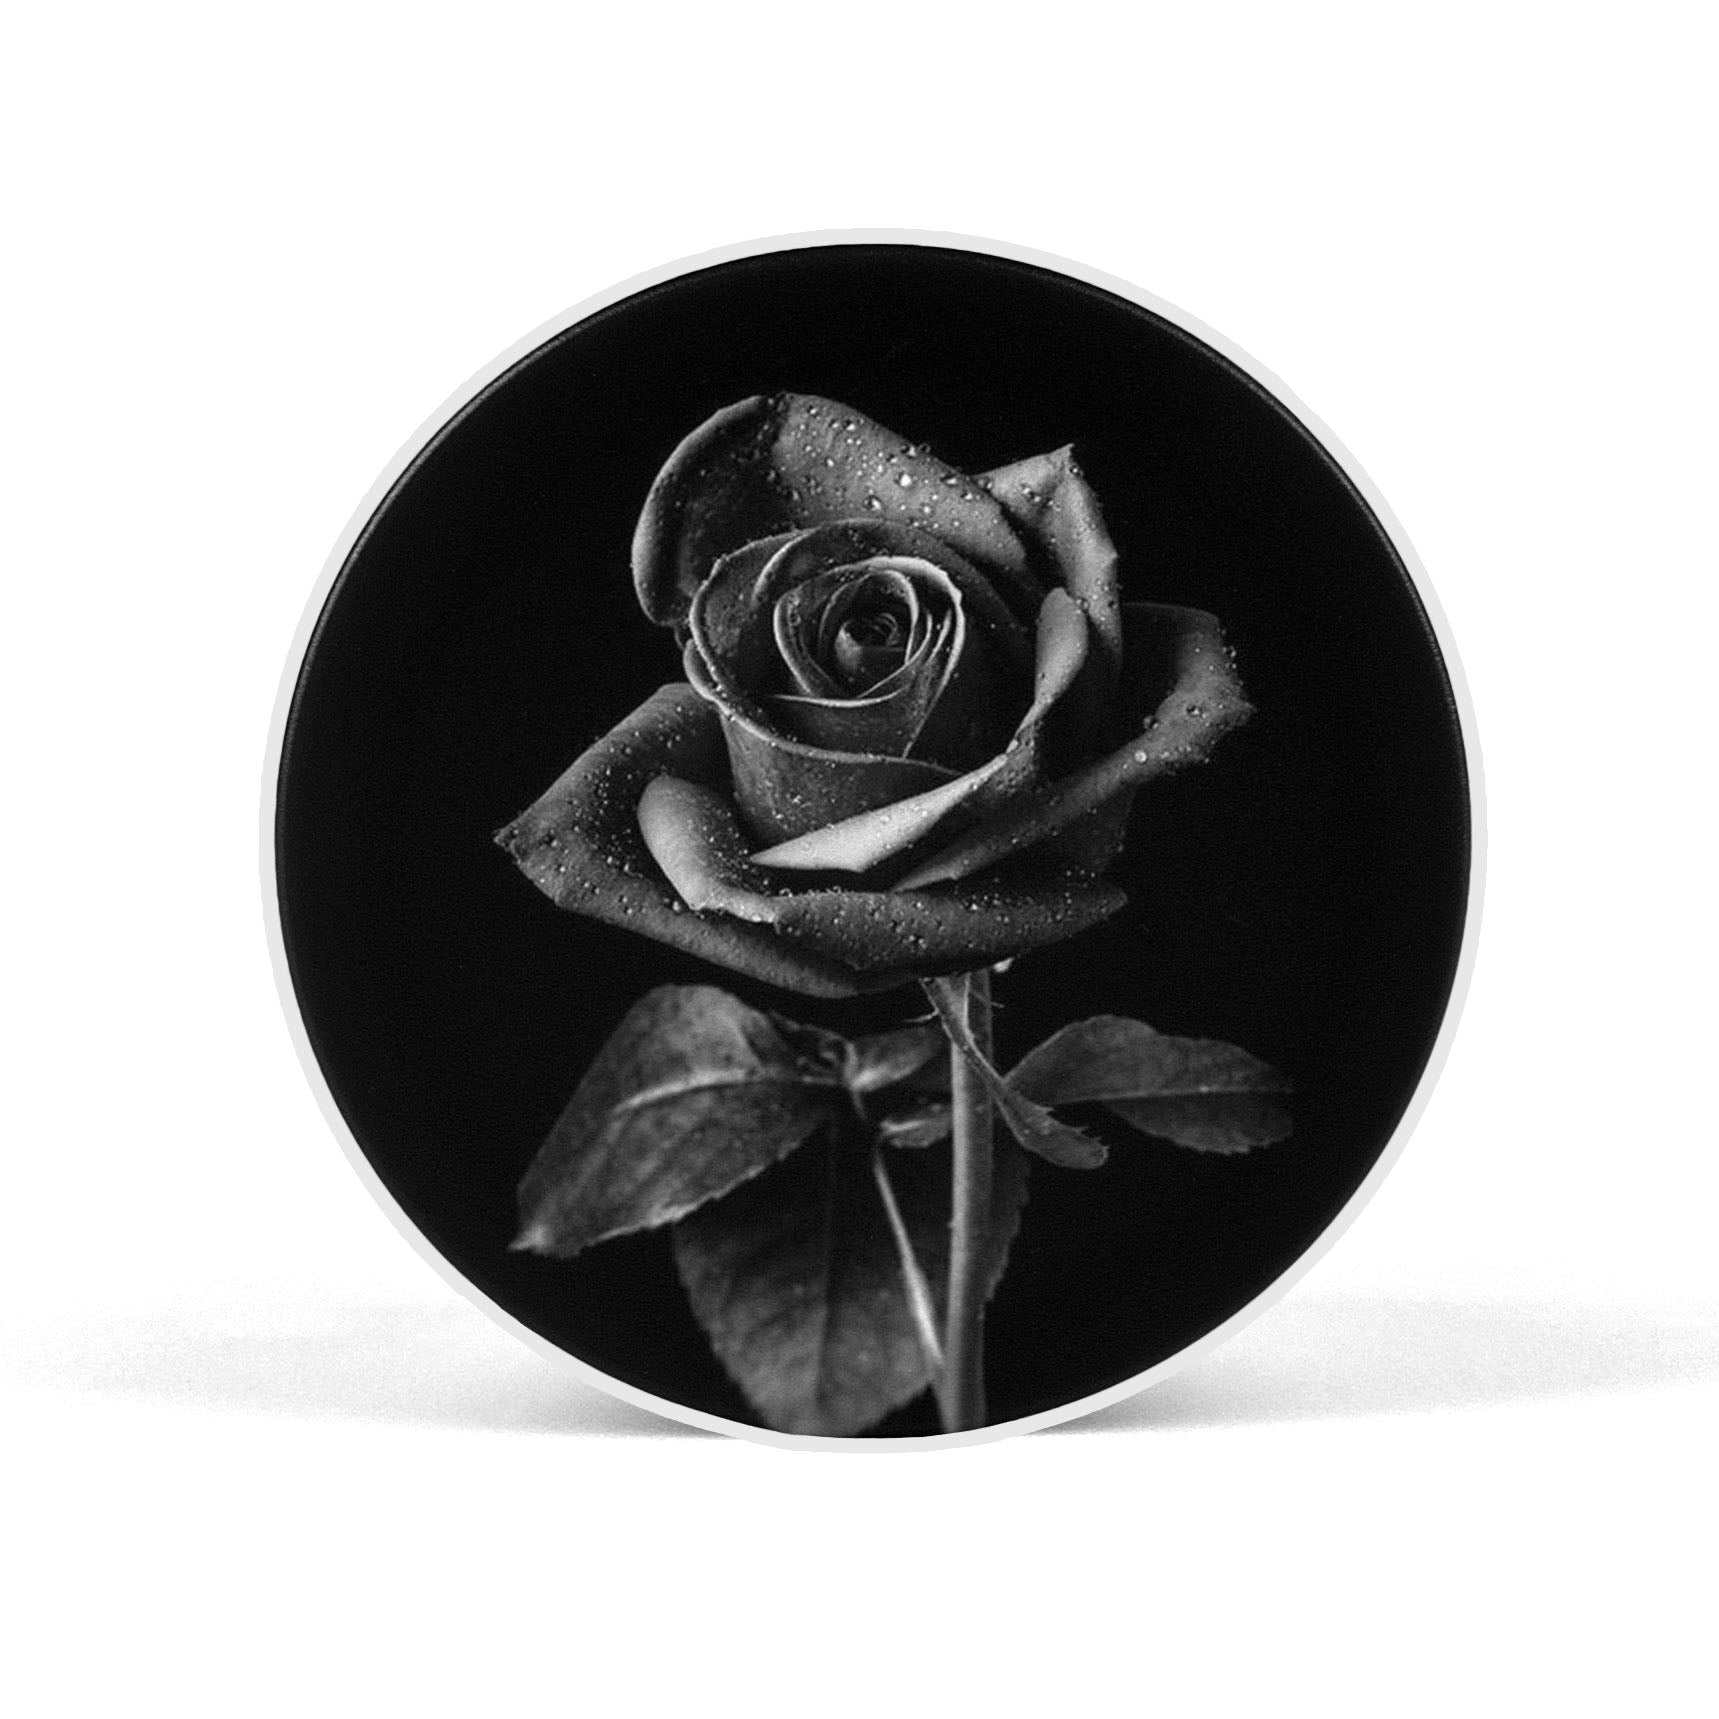 Black & White Rose Floral Mobile Phone Holder Grip - SCOTTSY